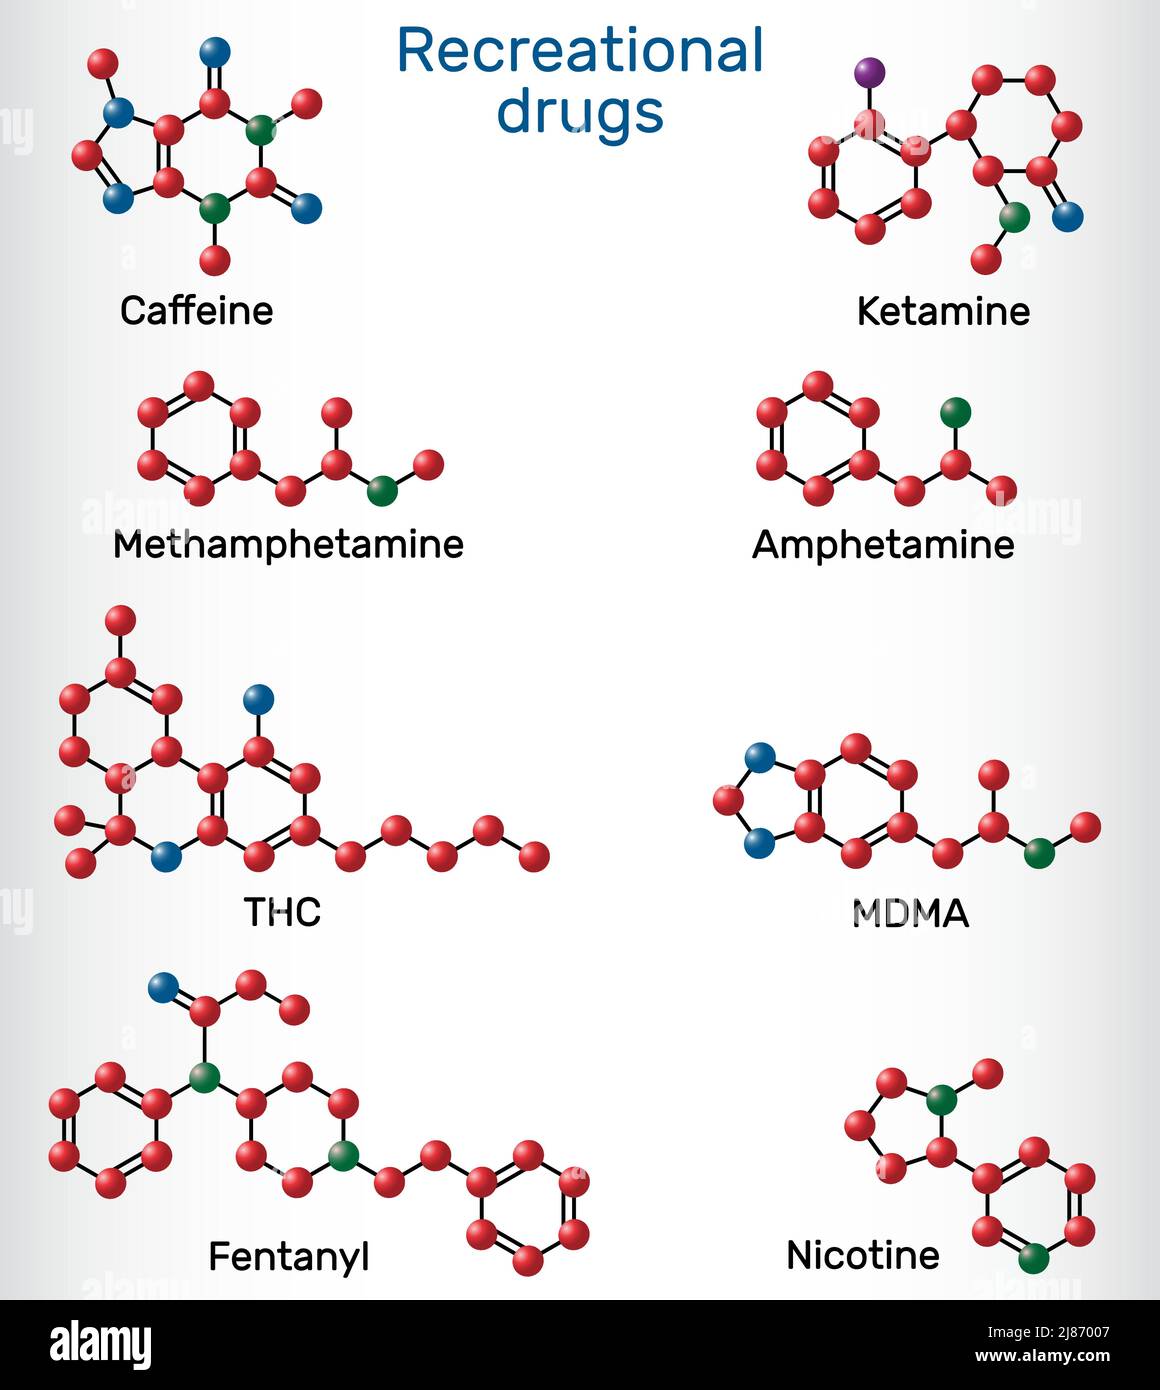 Caféine, nicotine, amphétamine, méthamphétamine (Crystal meth), MDMA, ecstasy, fentanyl, kétamine, tétrahydrocannabinol. Drogues récréatives. Vecteur Illustration de Vecteur